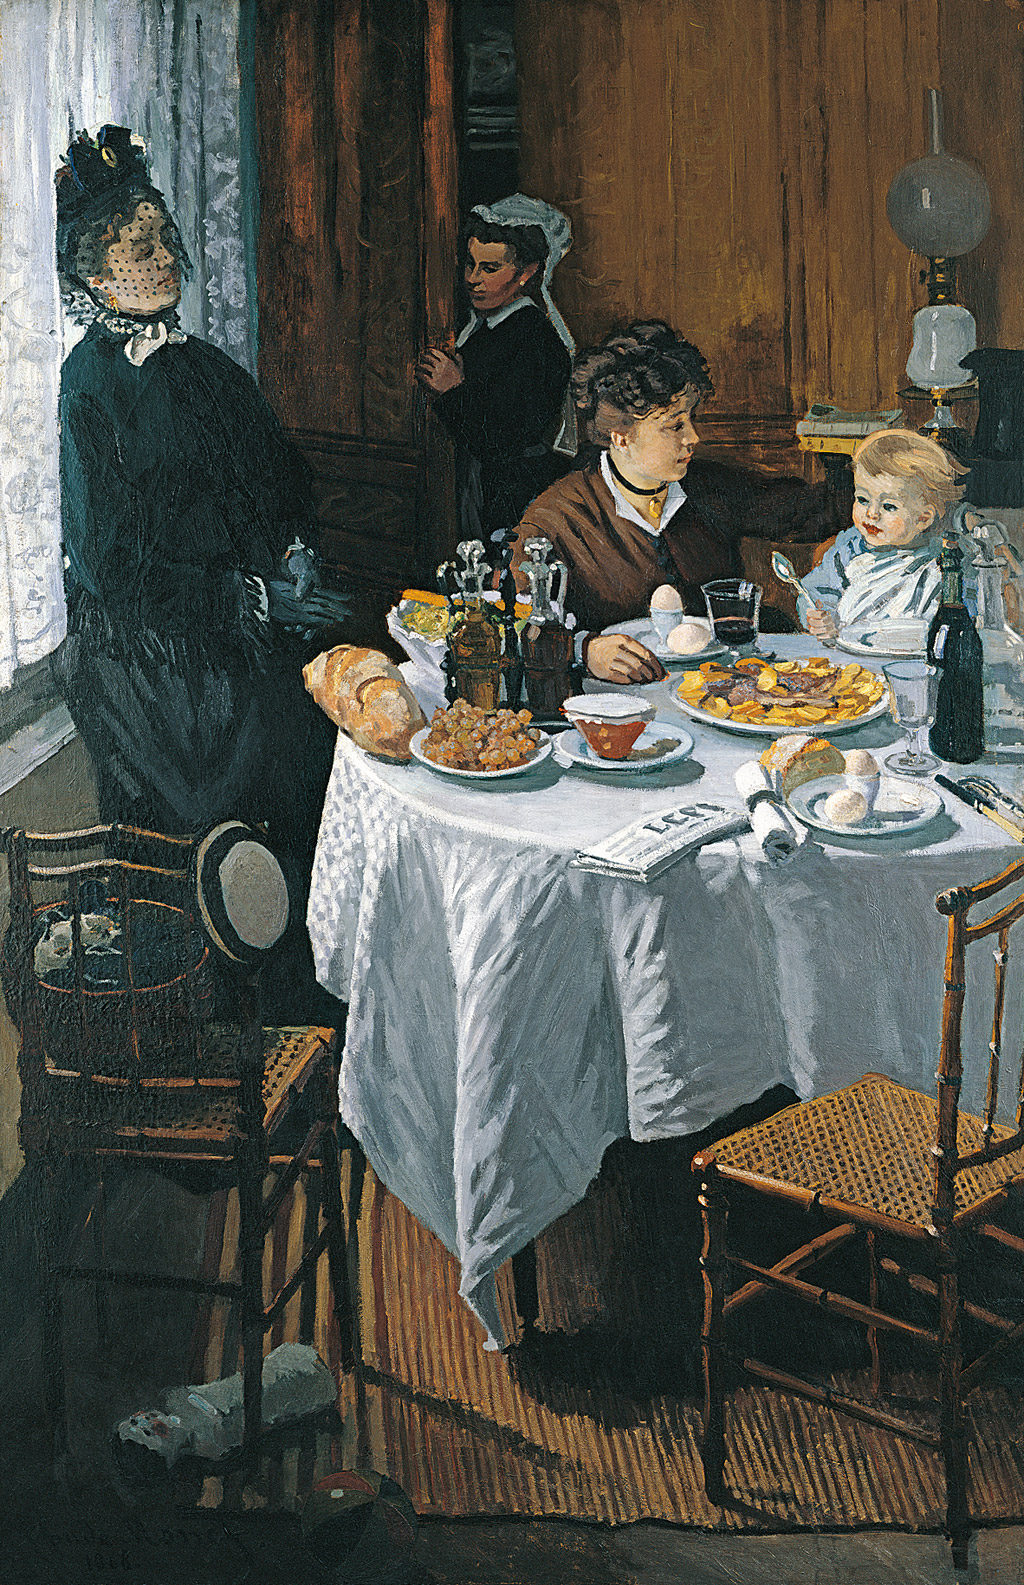 Обід (ланч) by Claude Monet - 1868/69 роки - 231.5 х 151.5 см 